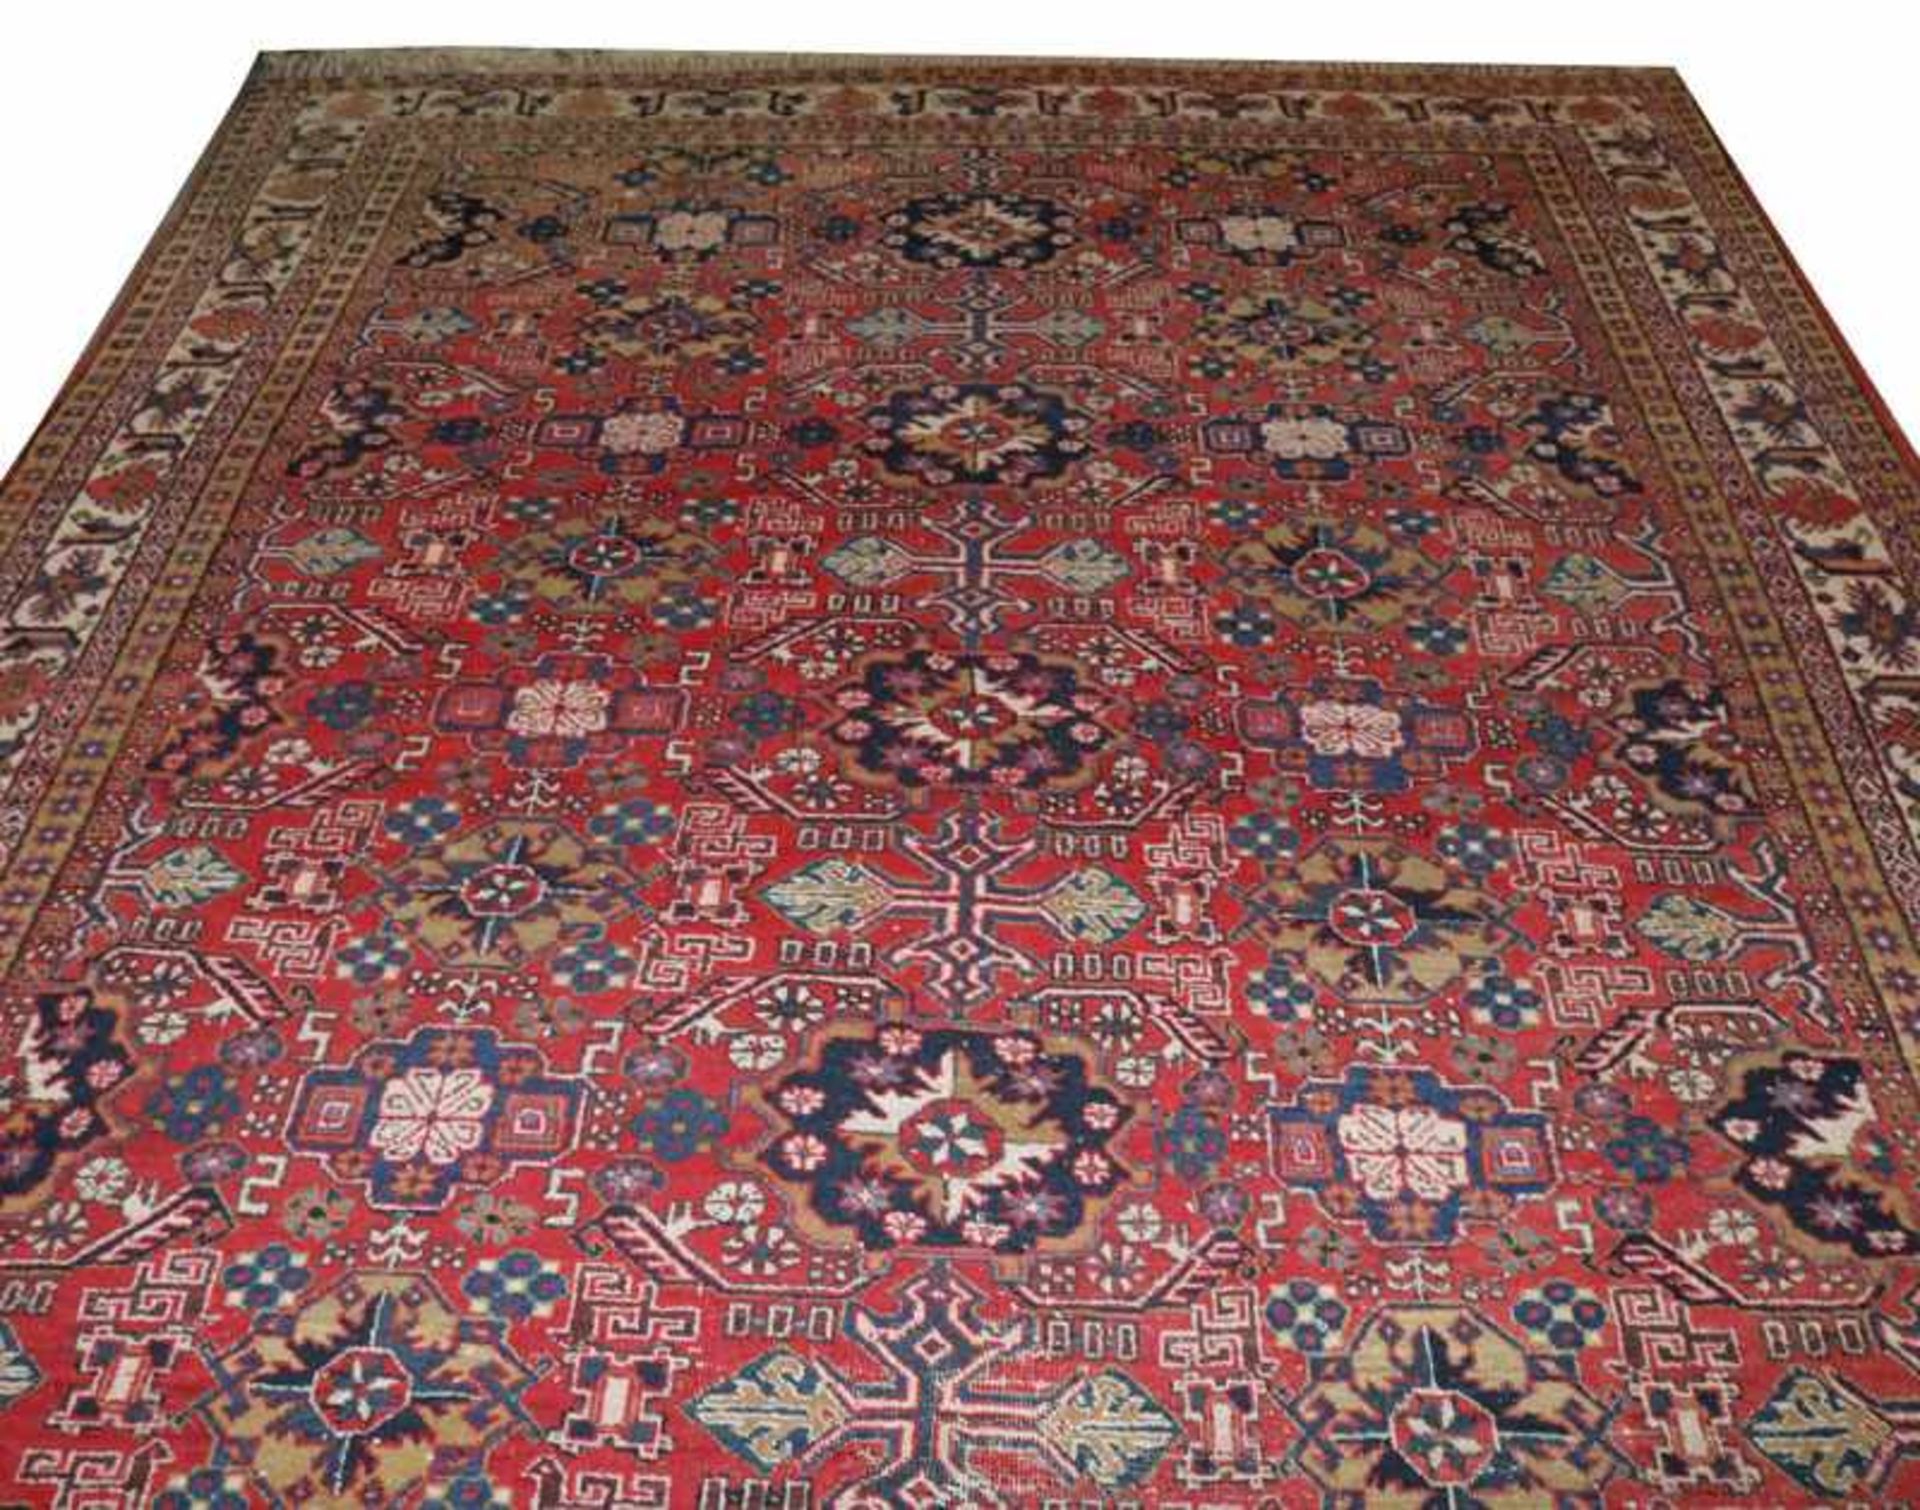 Teppich, Wiss, rot/blau/bunt, 324 cm x 244 cm, teils abgetreten, Gebrauchsspuren